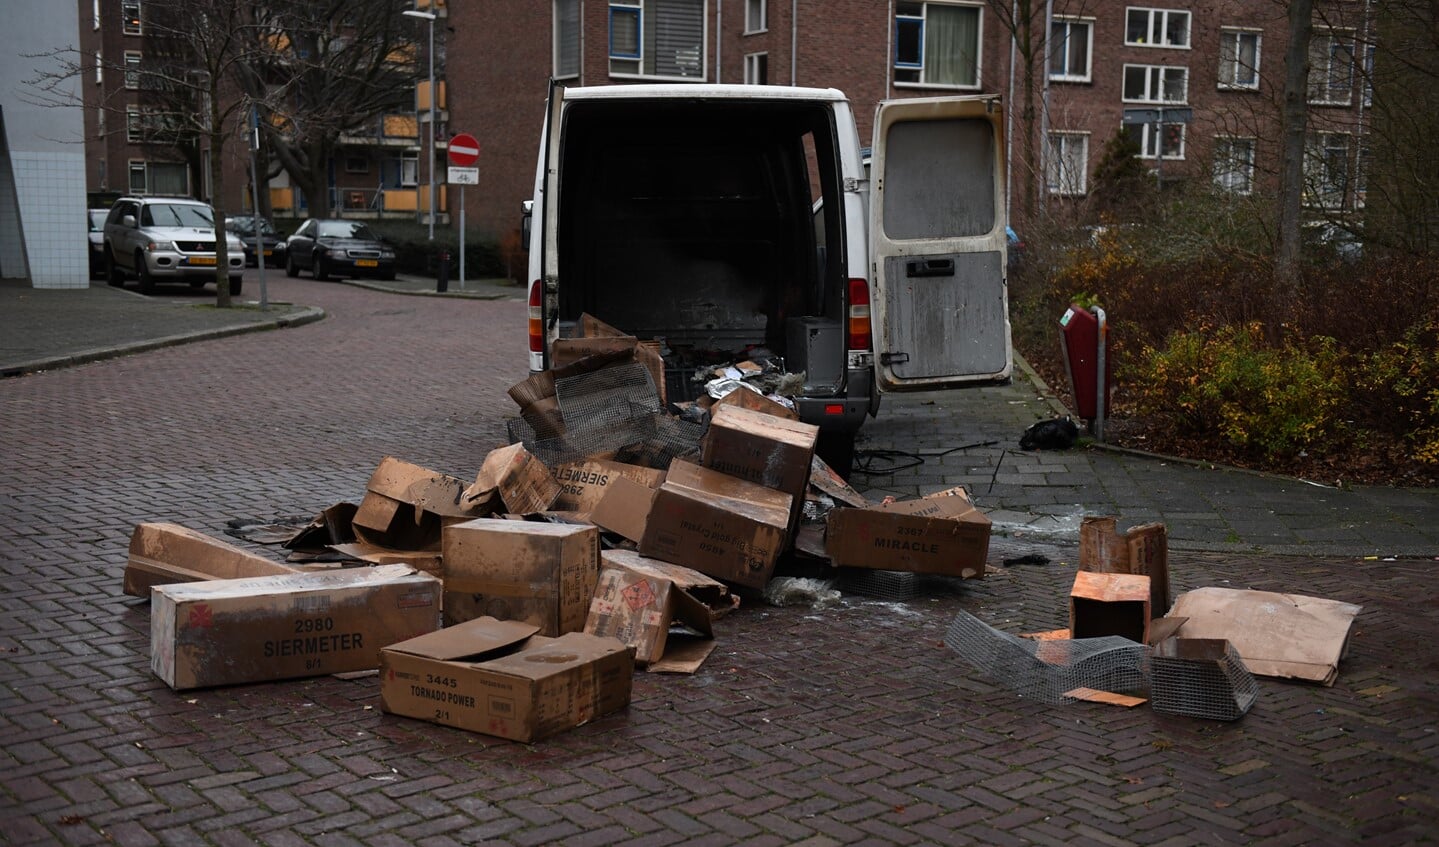 Aan de Savallelaan in Voorburg werd een brandend voorwerp gegooid in een bus met lege dozen (foto: Regio15).